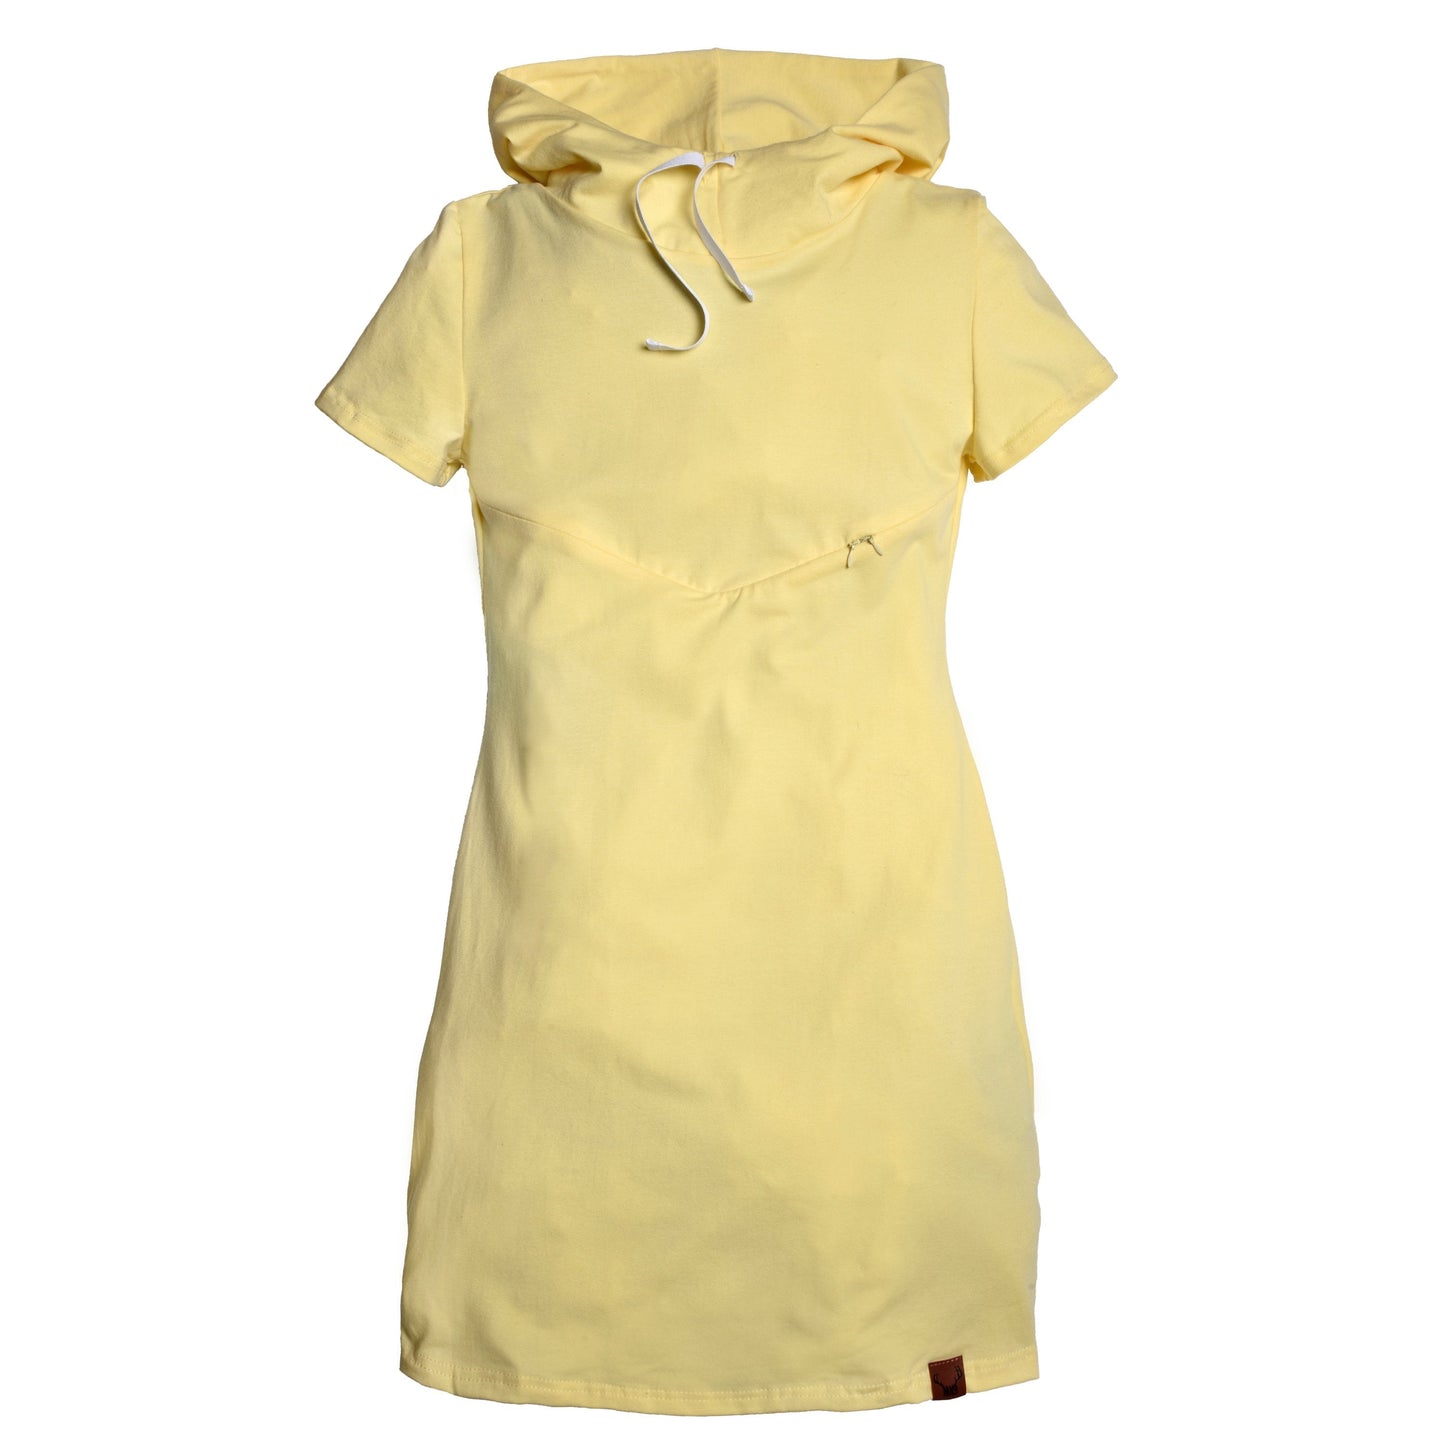 XXLARGE - JAUNE robe maternité, allaitement, postpartum - Léger défaut ( réf #457 )